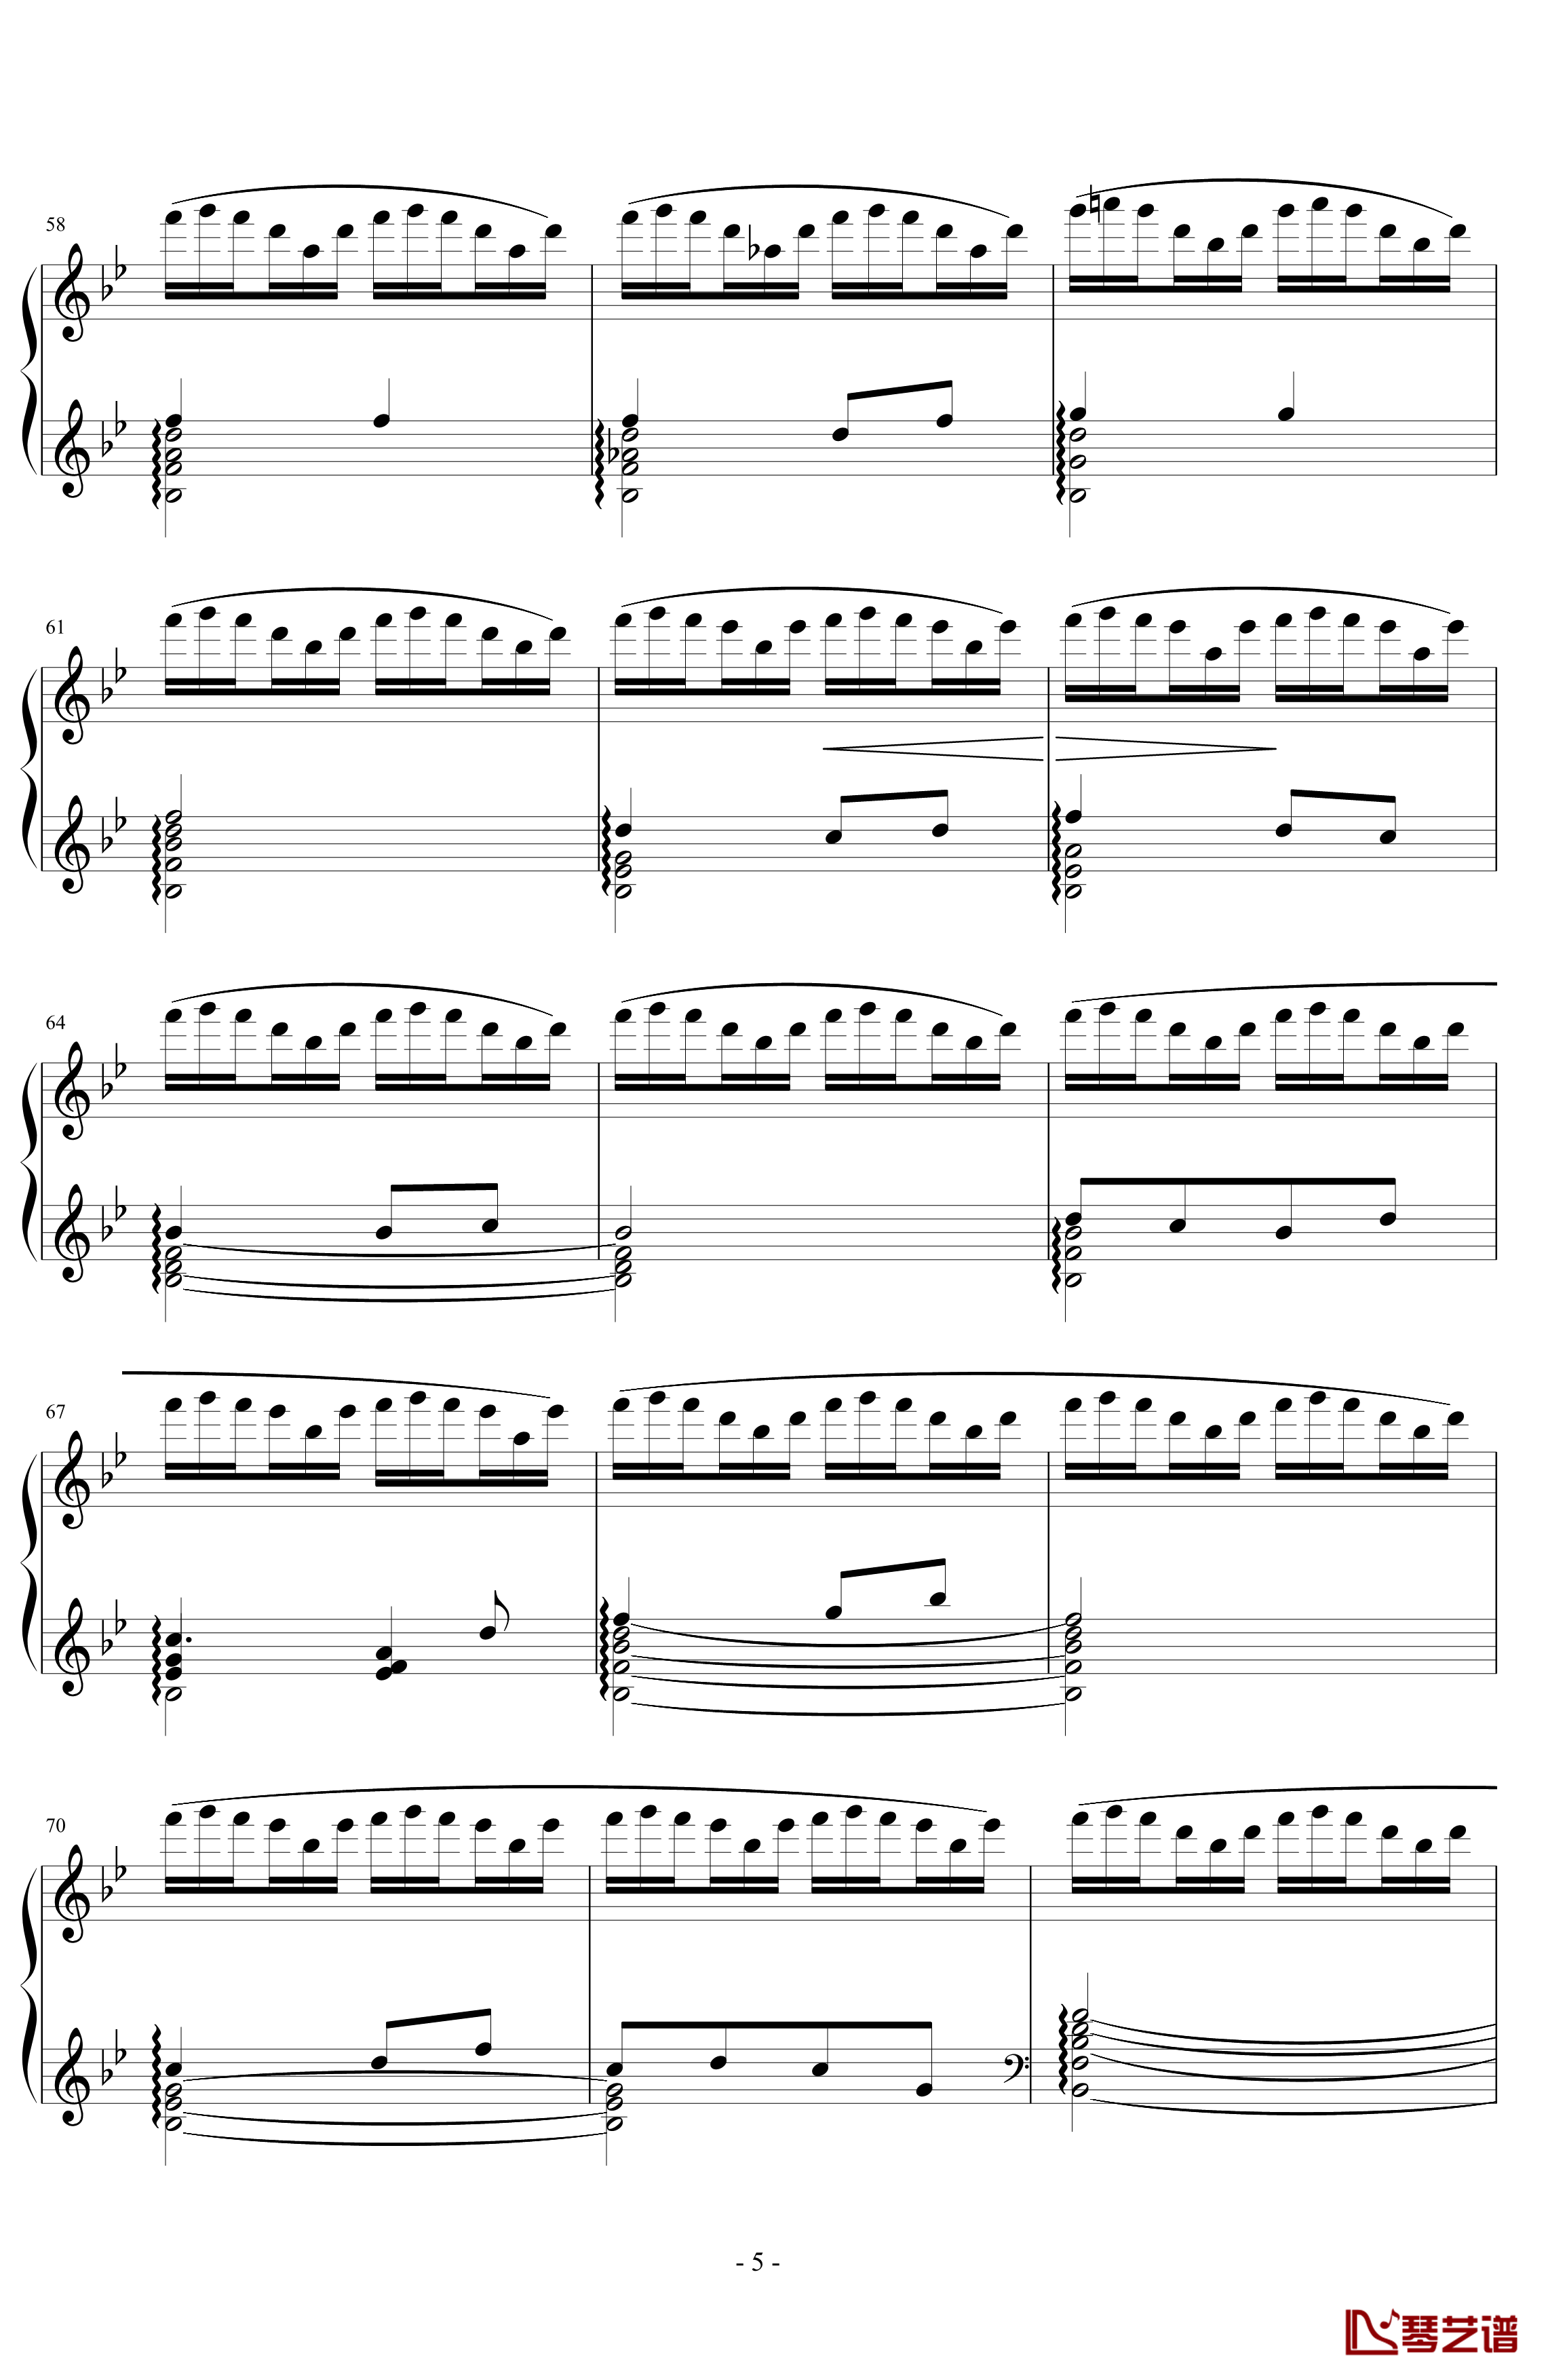 《练习曲Op.25 No.3》钢琴谱-阿连斯基-希望能为大家带来惊喜5